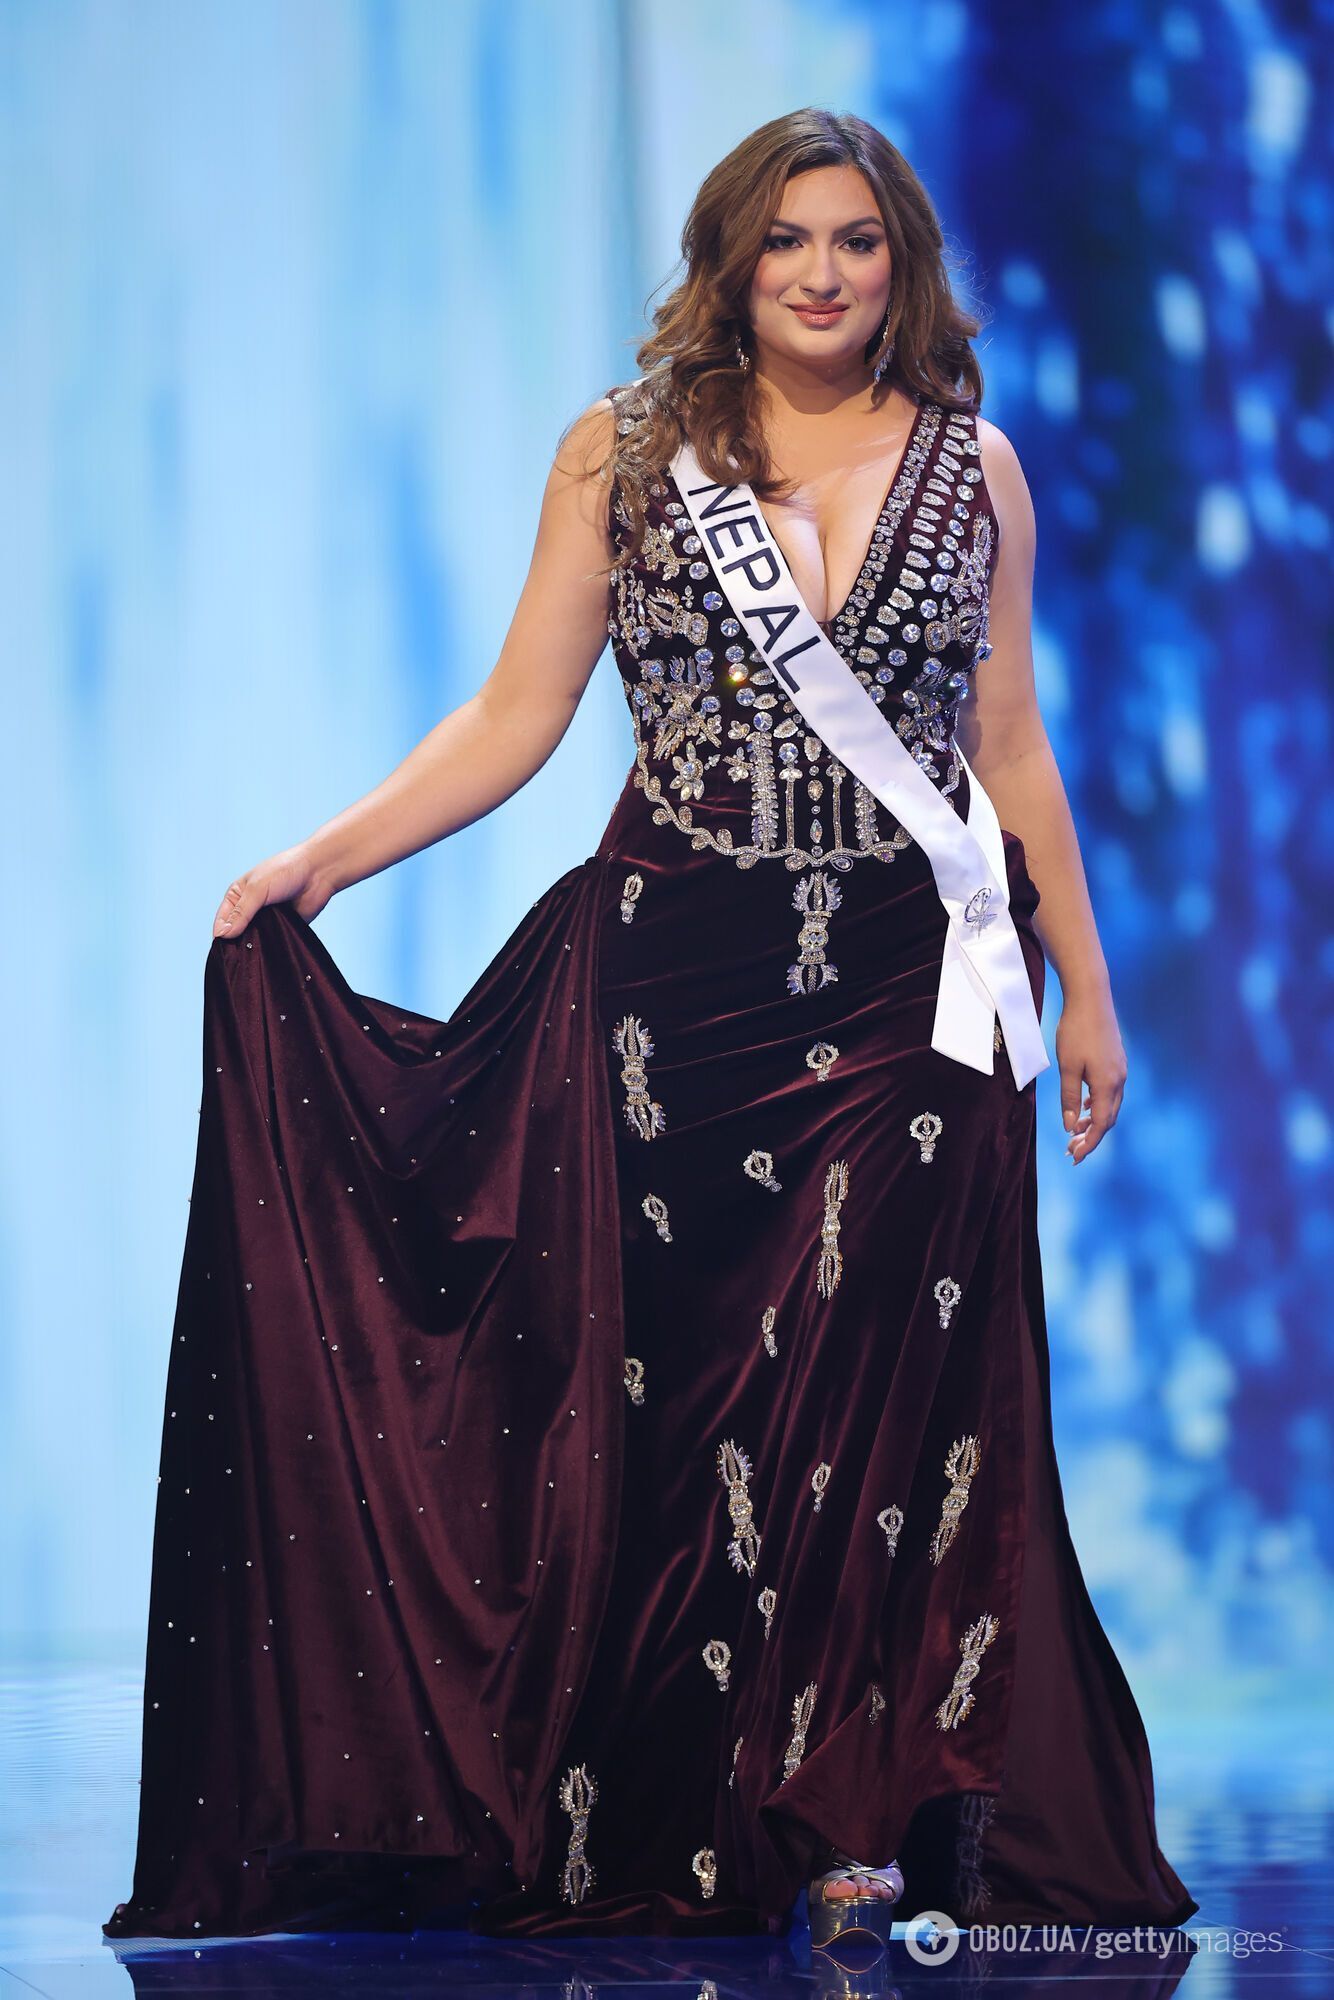 Не существует никаких стандартов: почему зрителей поразила представительница Непала на "Мисс Вселенной", которая вошла в топ-20. Фото